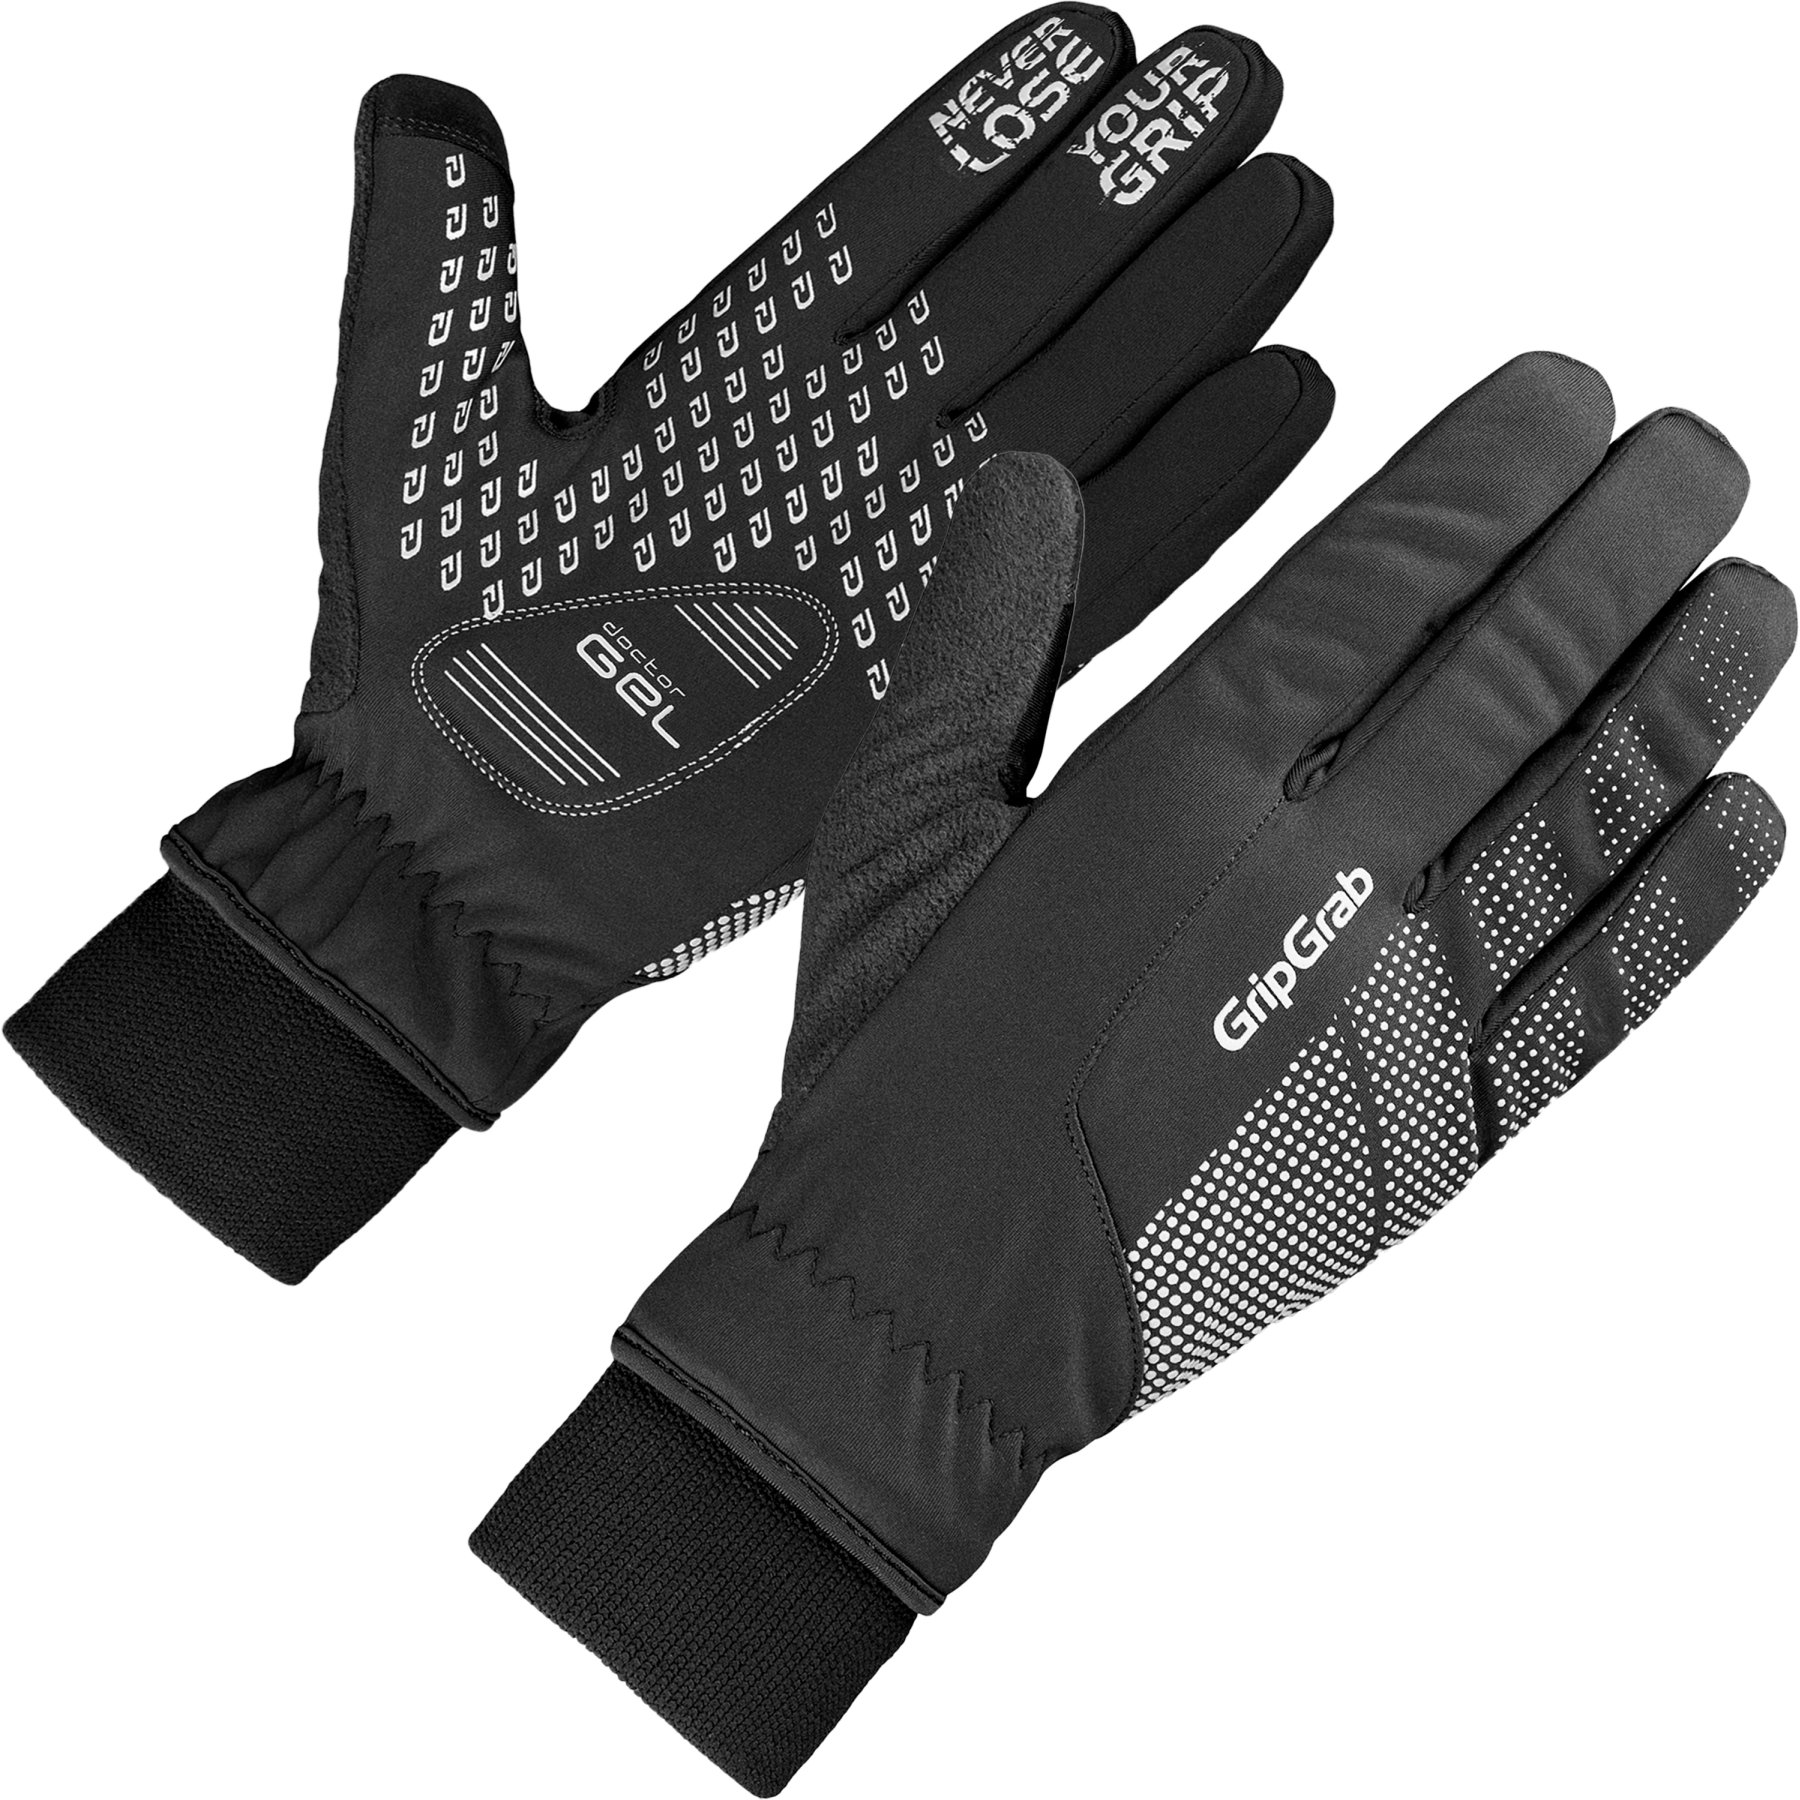 Produktbild von GripGrab Ride Winddichter Winter Handschuhe - Black